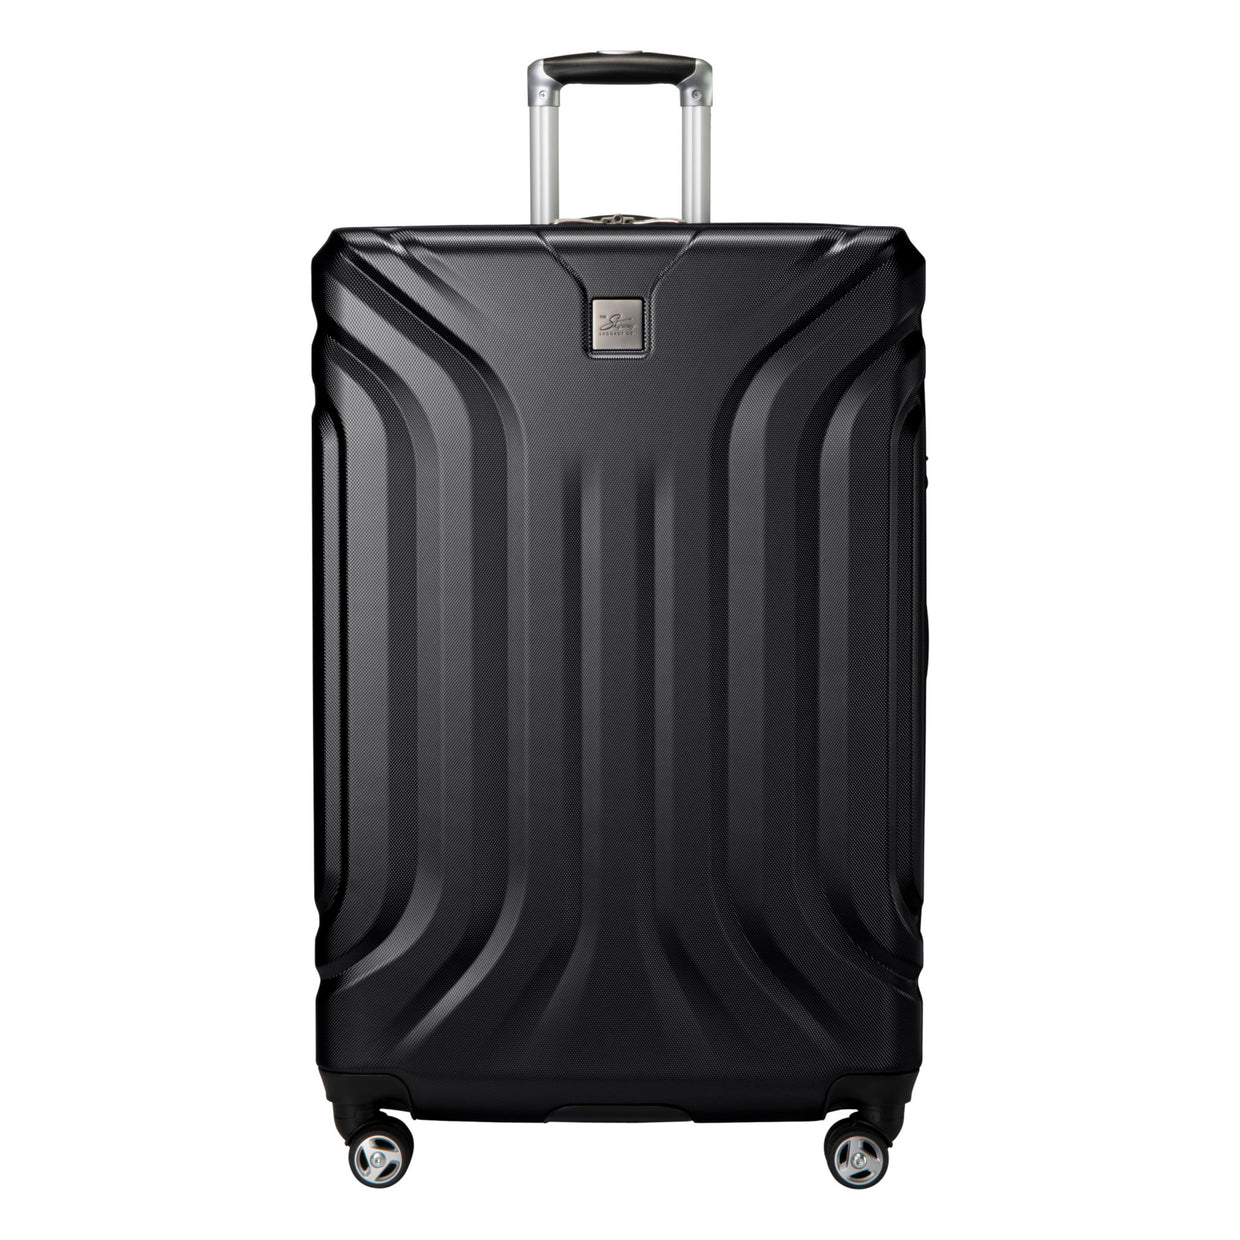 Nimbus 4.0 Hardside Large Checked Luggage